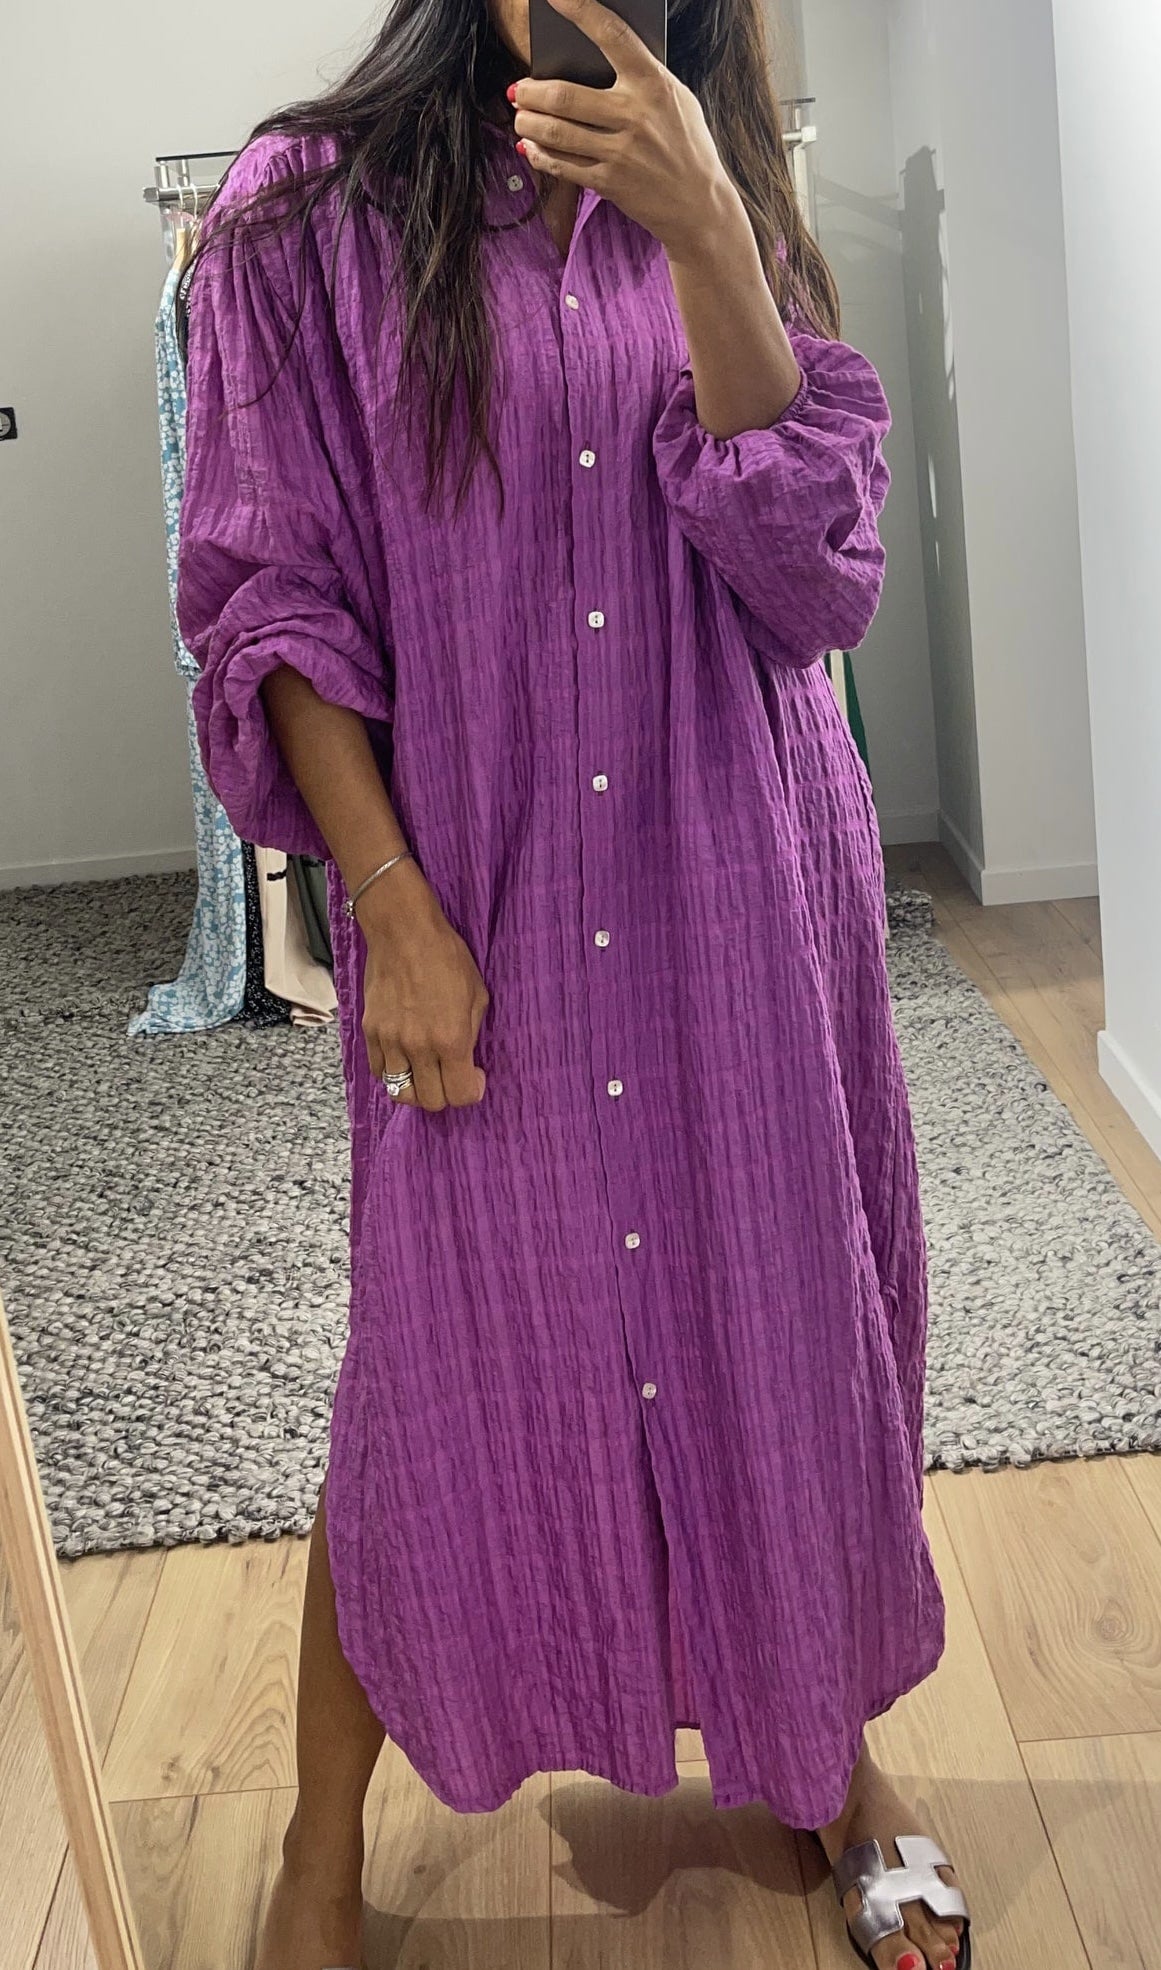 Robe ample bohème en coton de couleur violette